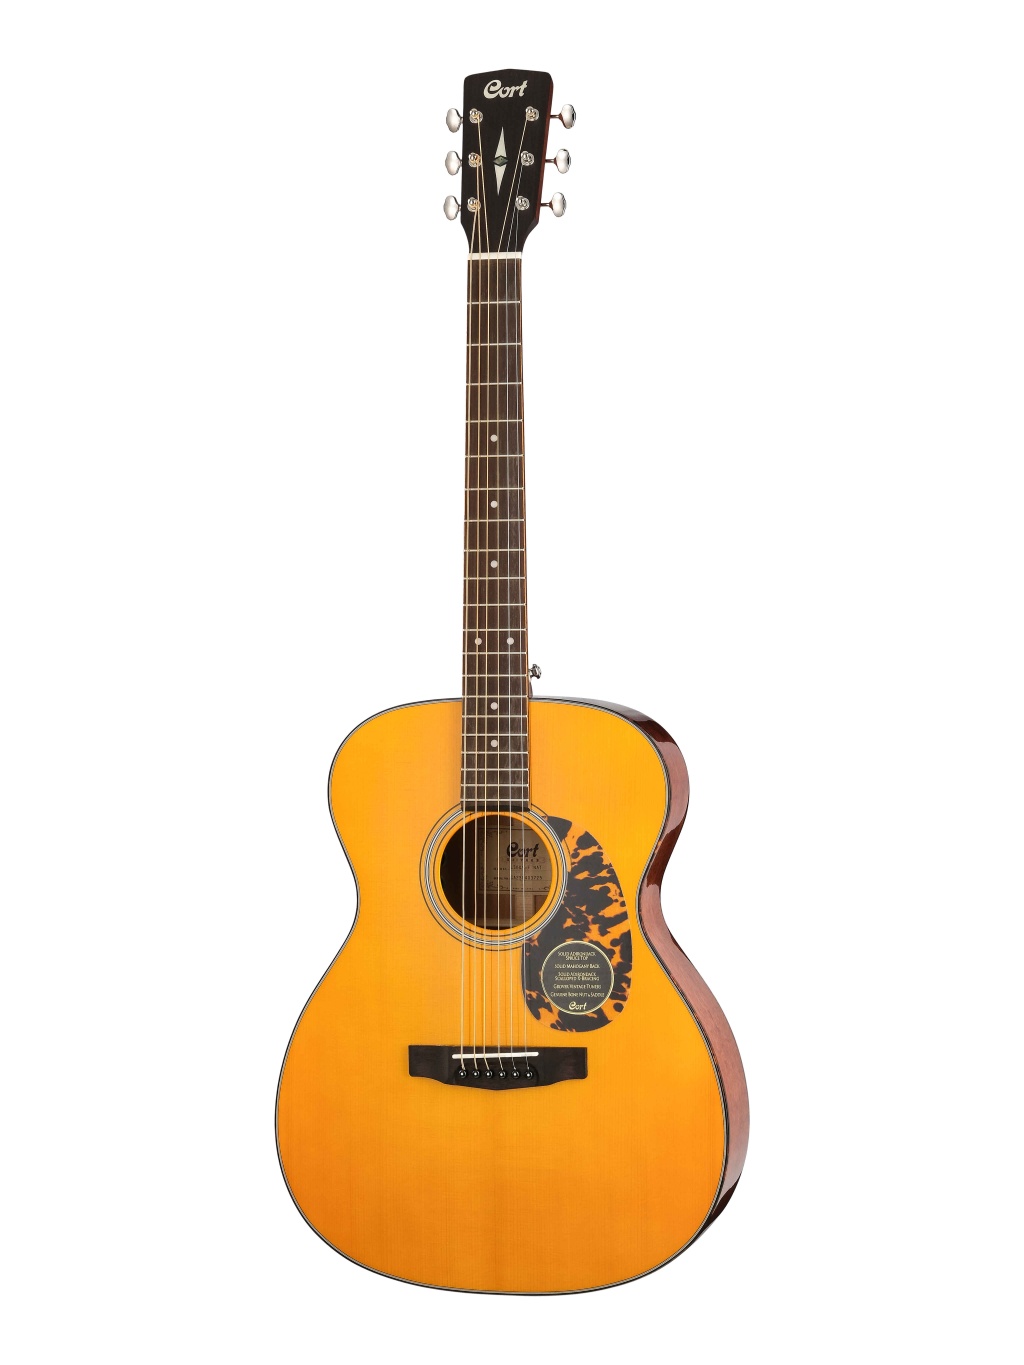 L300VF-NAT-WBAG Luce Series Электро-акустическая гитара, цвет натуральный, чехол, Cort